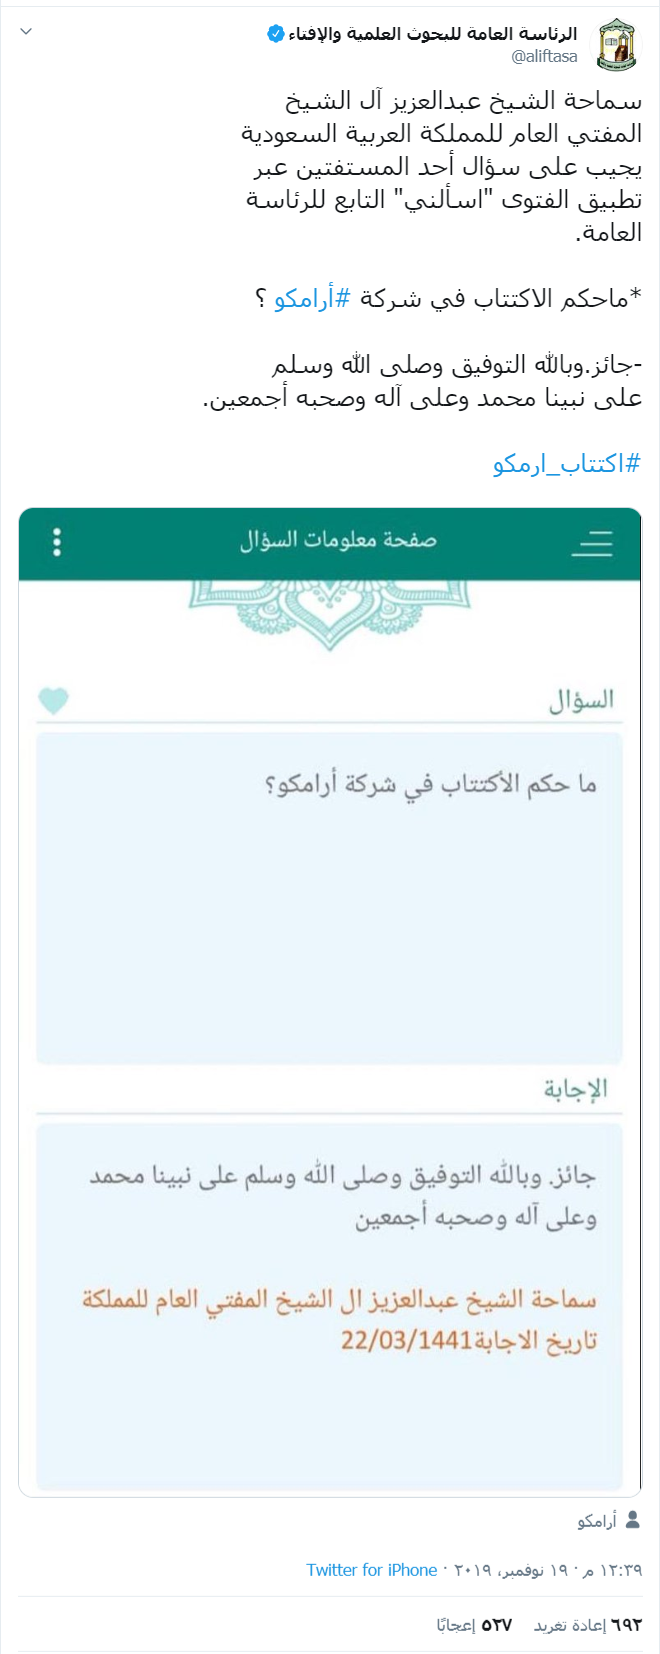 المفتي العام يفتي بجواز الاكتتاب في أرامكو هوامير البورصة السعودية